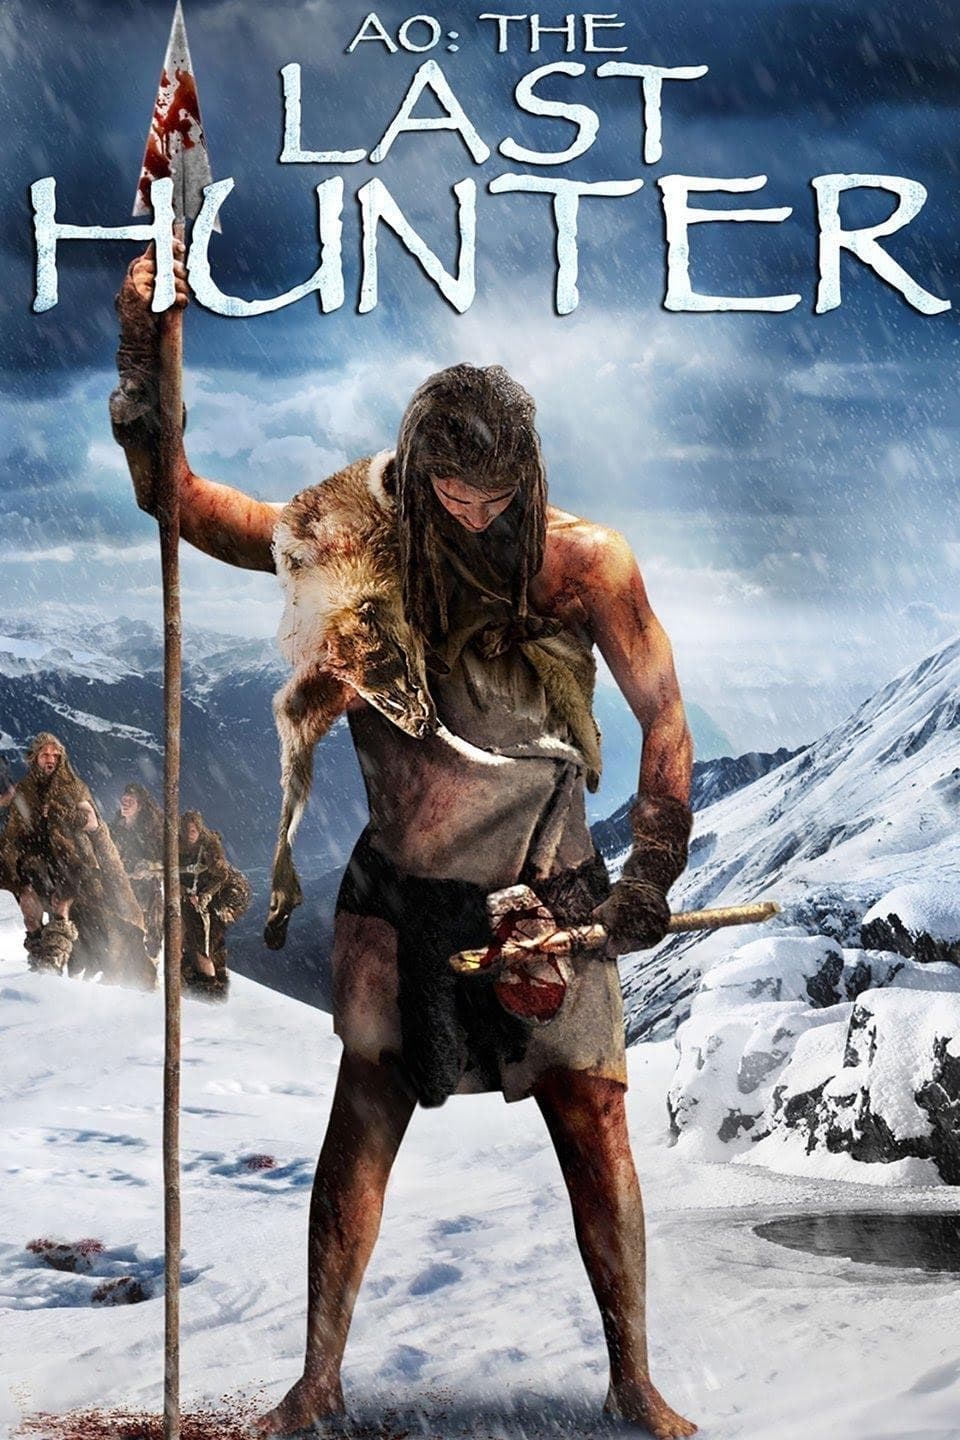 ดูหนังออนไลน์ฟรี Ao: The Last Hunter ดึกดำบรรพ์พันธุ์มนุษย์หิน